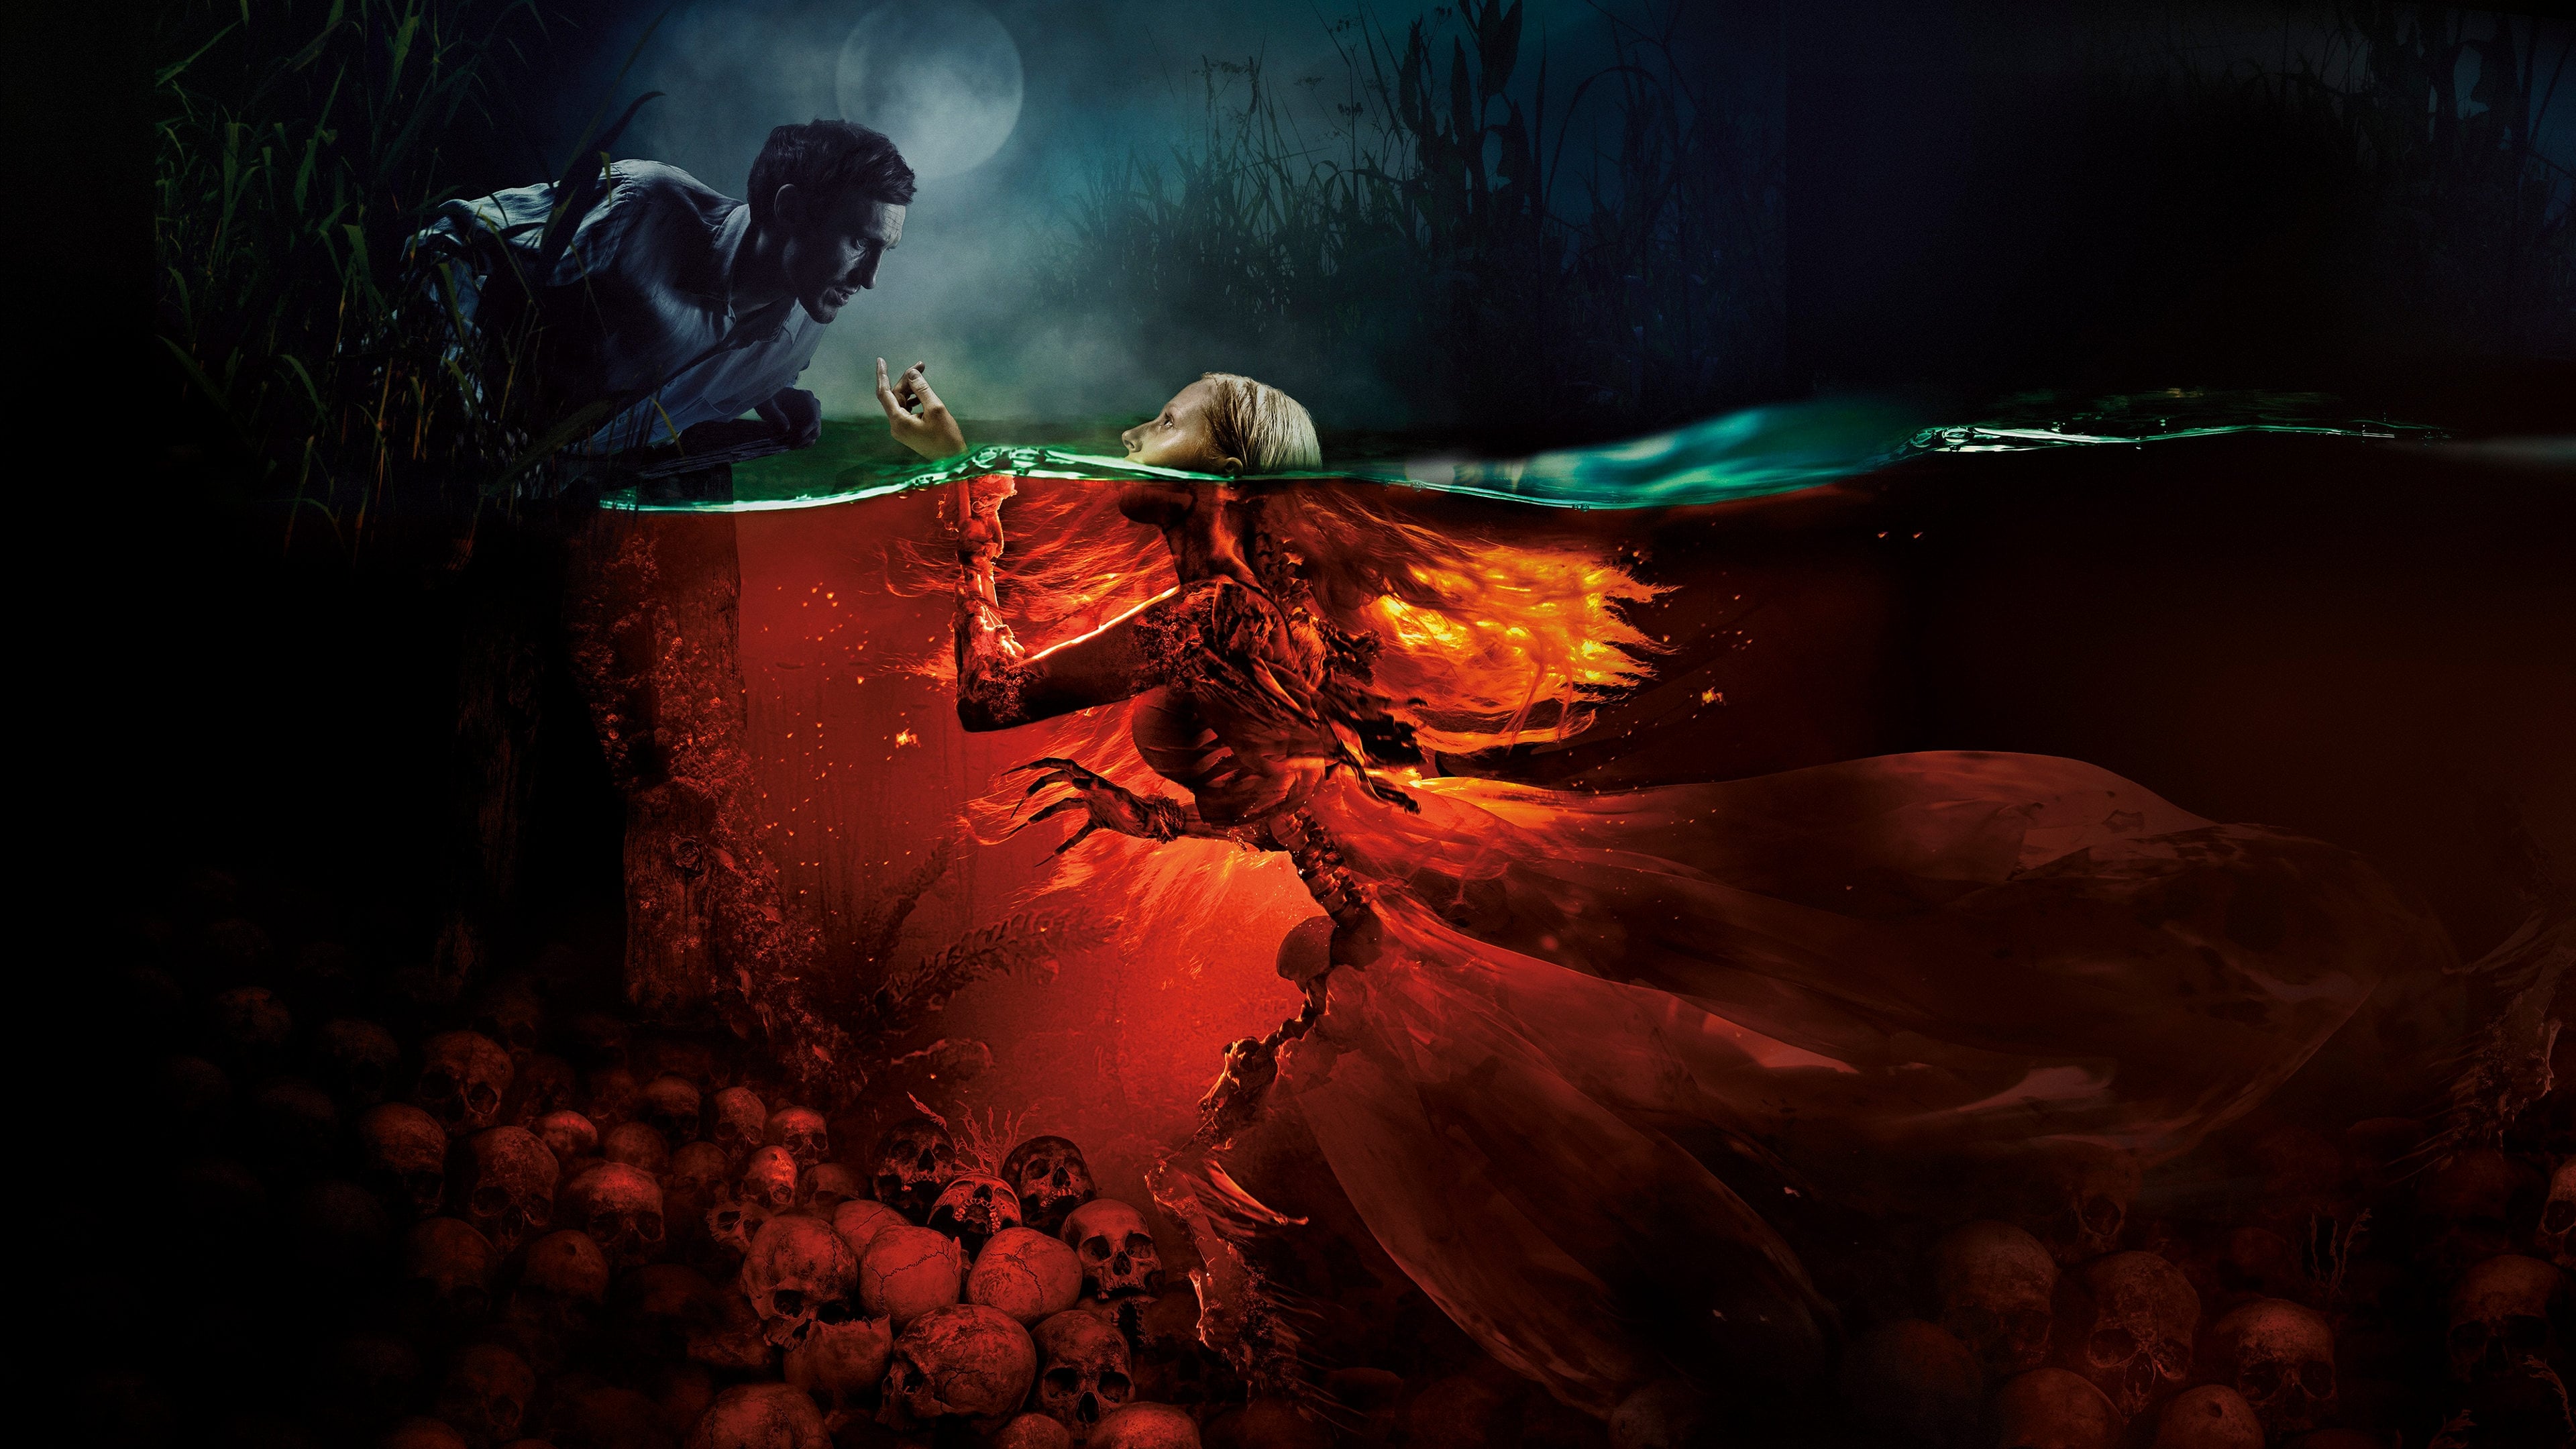 Poster Phim Mỹ Nhân Ngư: Hồ Tử Thần (The Mermaid: Lake of the Dead)